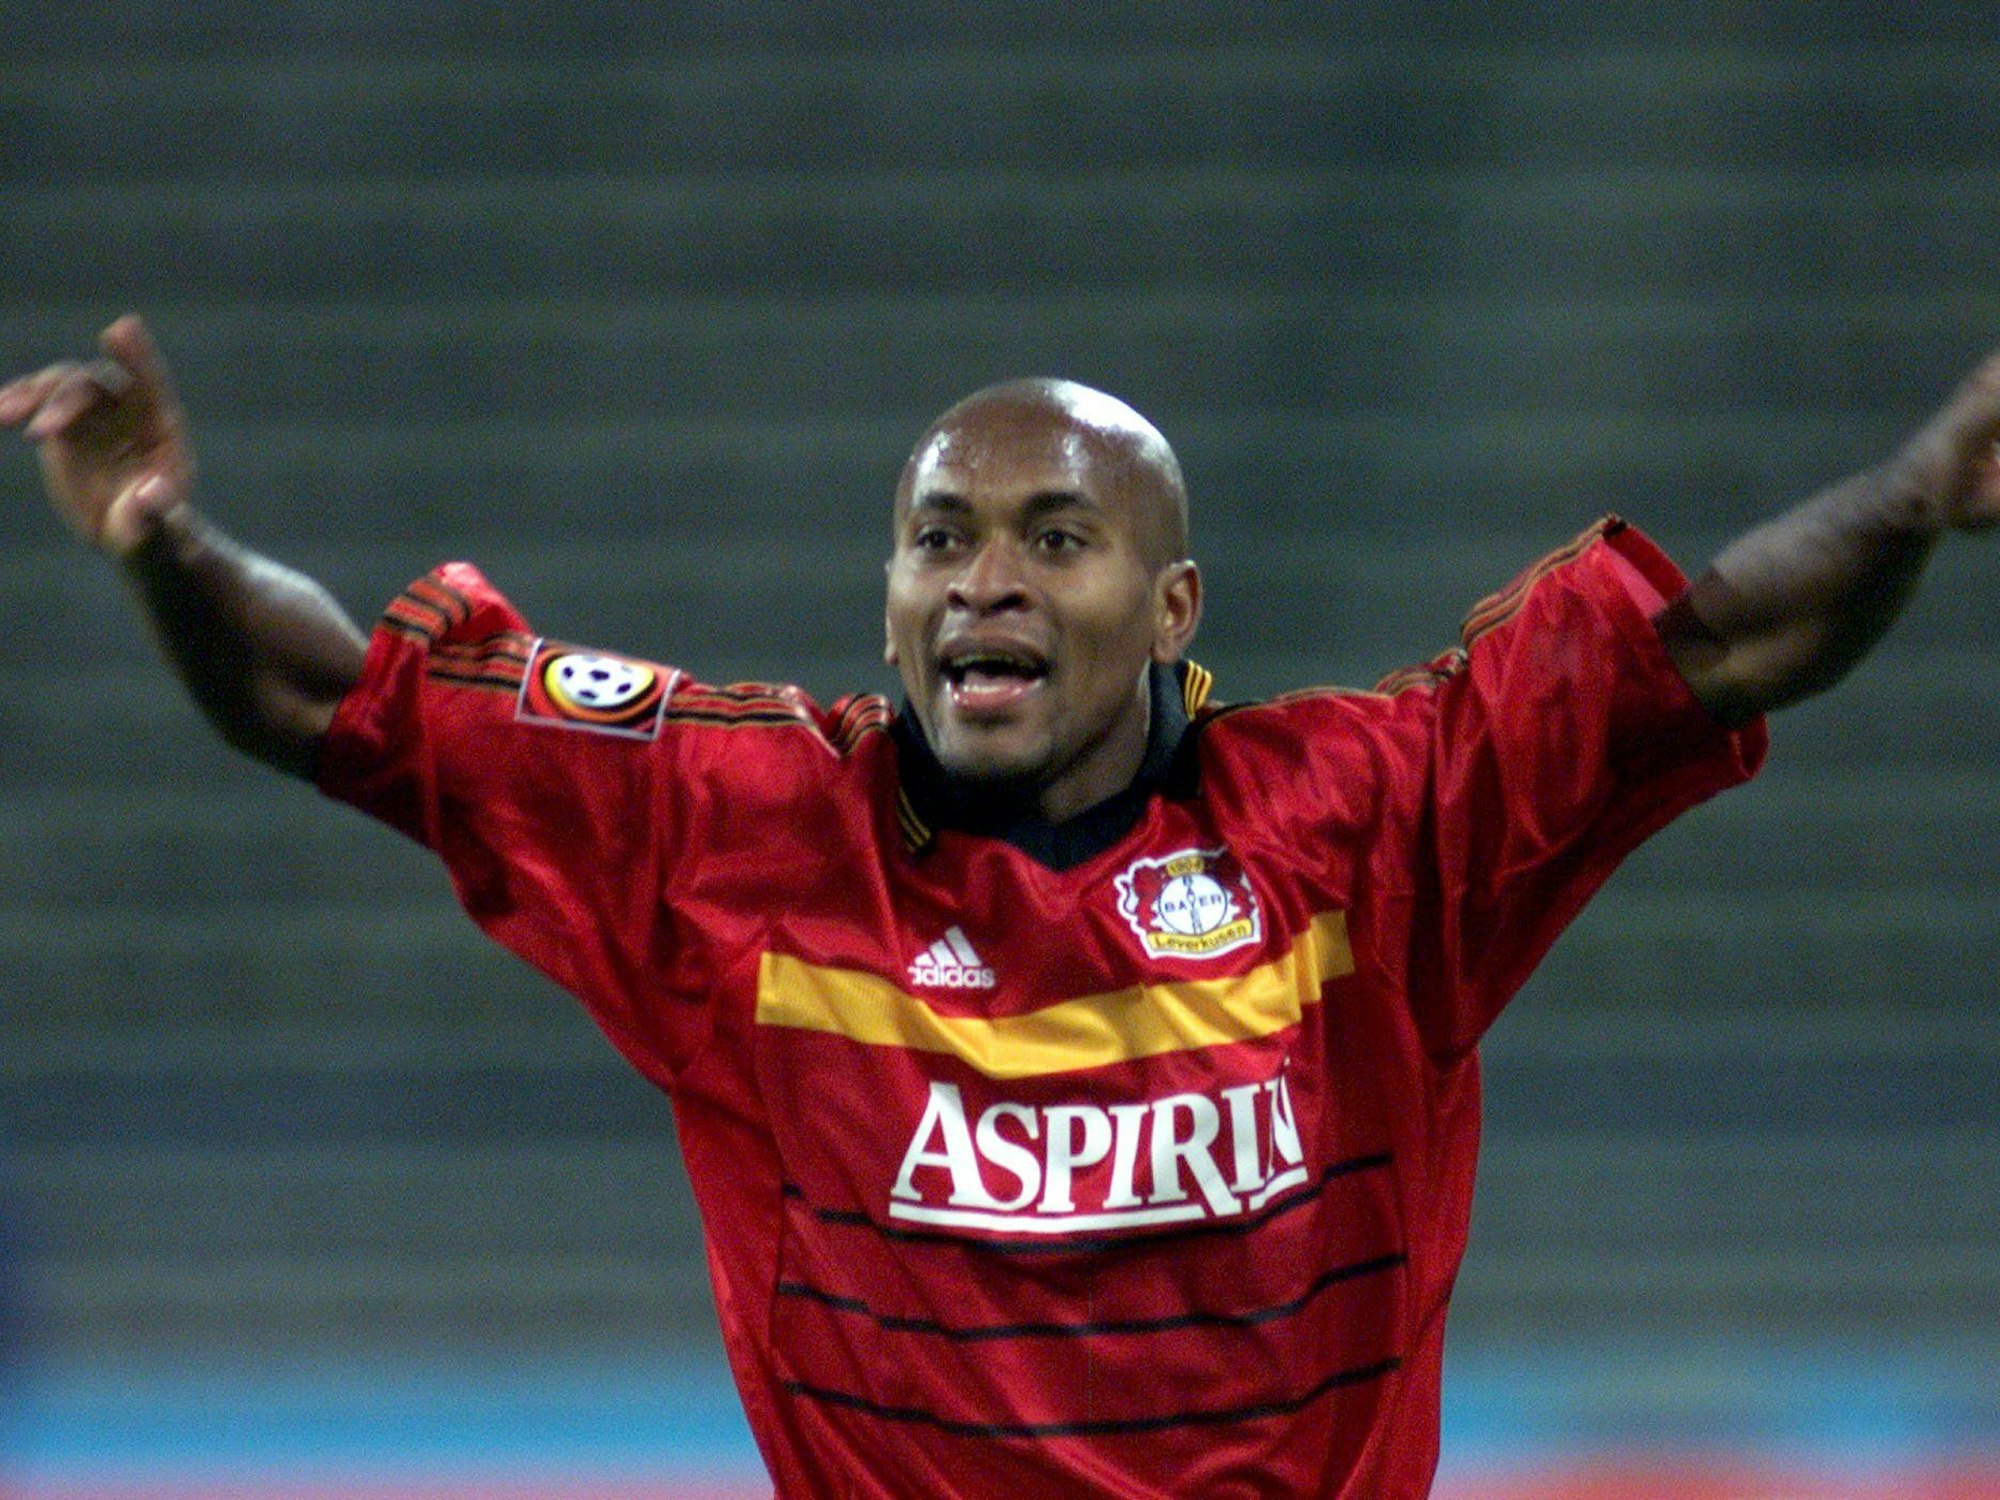 Ze Roberto von Bayer Leverkusen jubelt am 14. April 1999 im Münchener Olympiastadion nach seinem 2:0-Treffer gegen den TSV 1860 München.